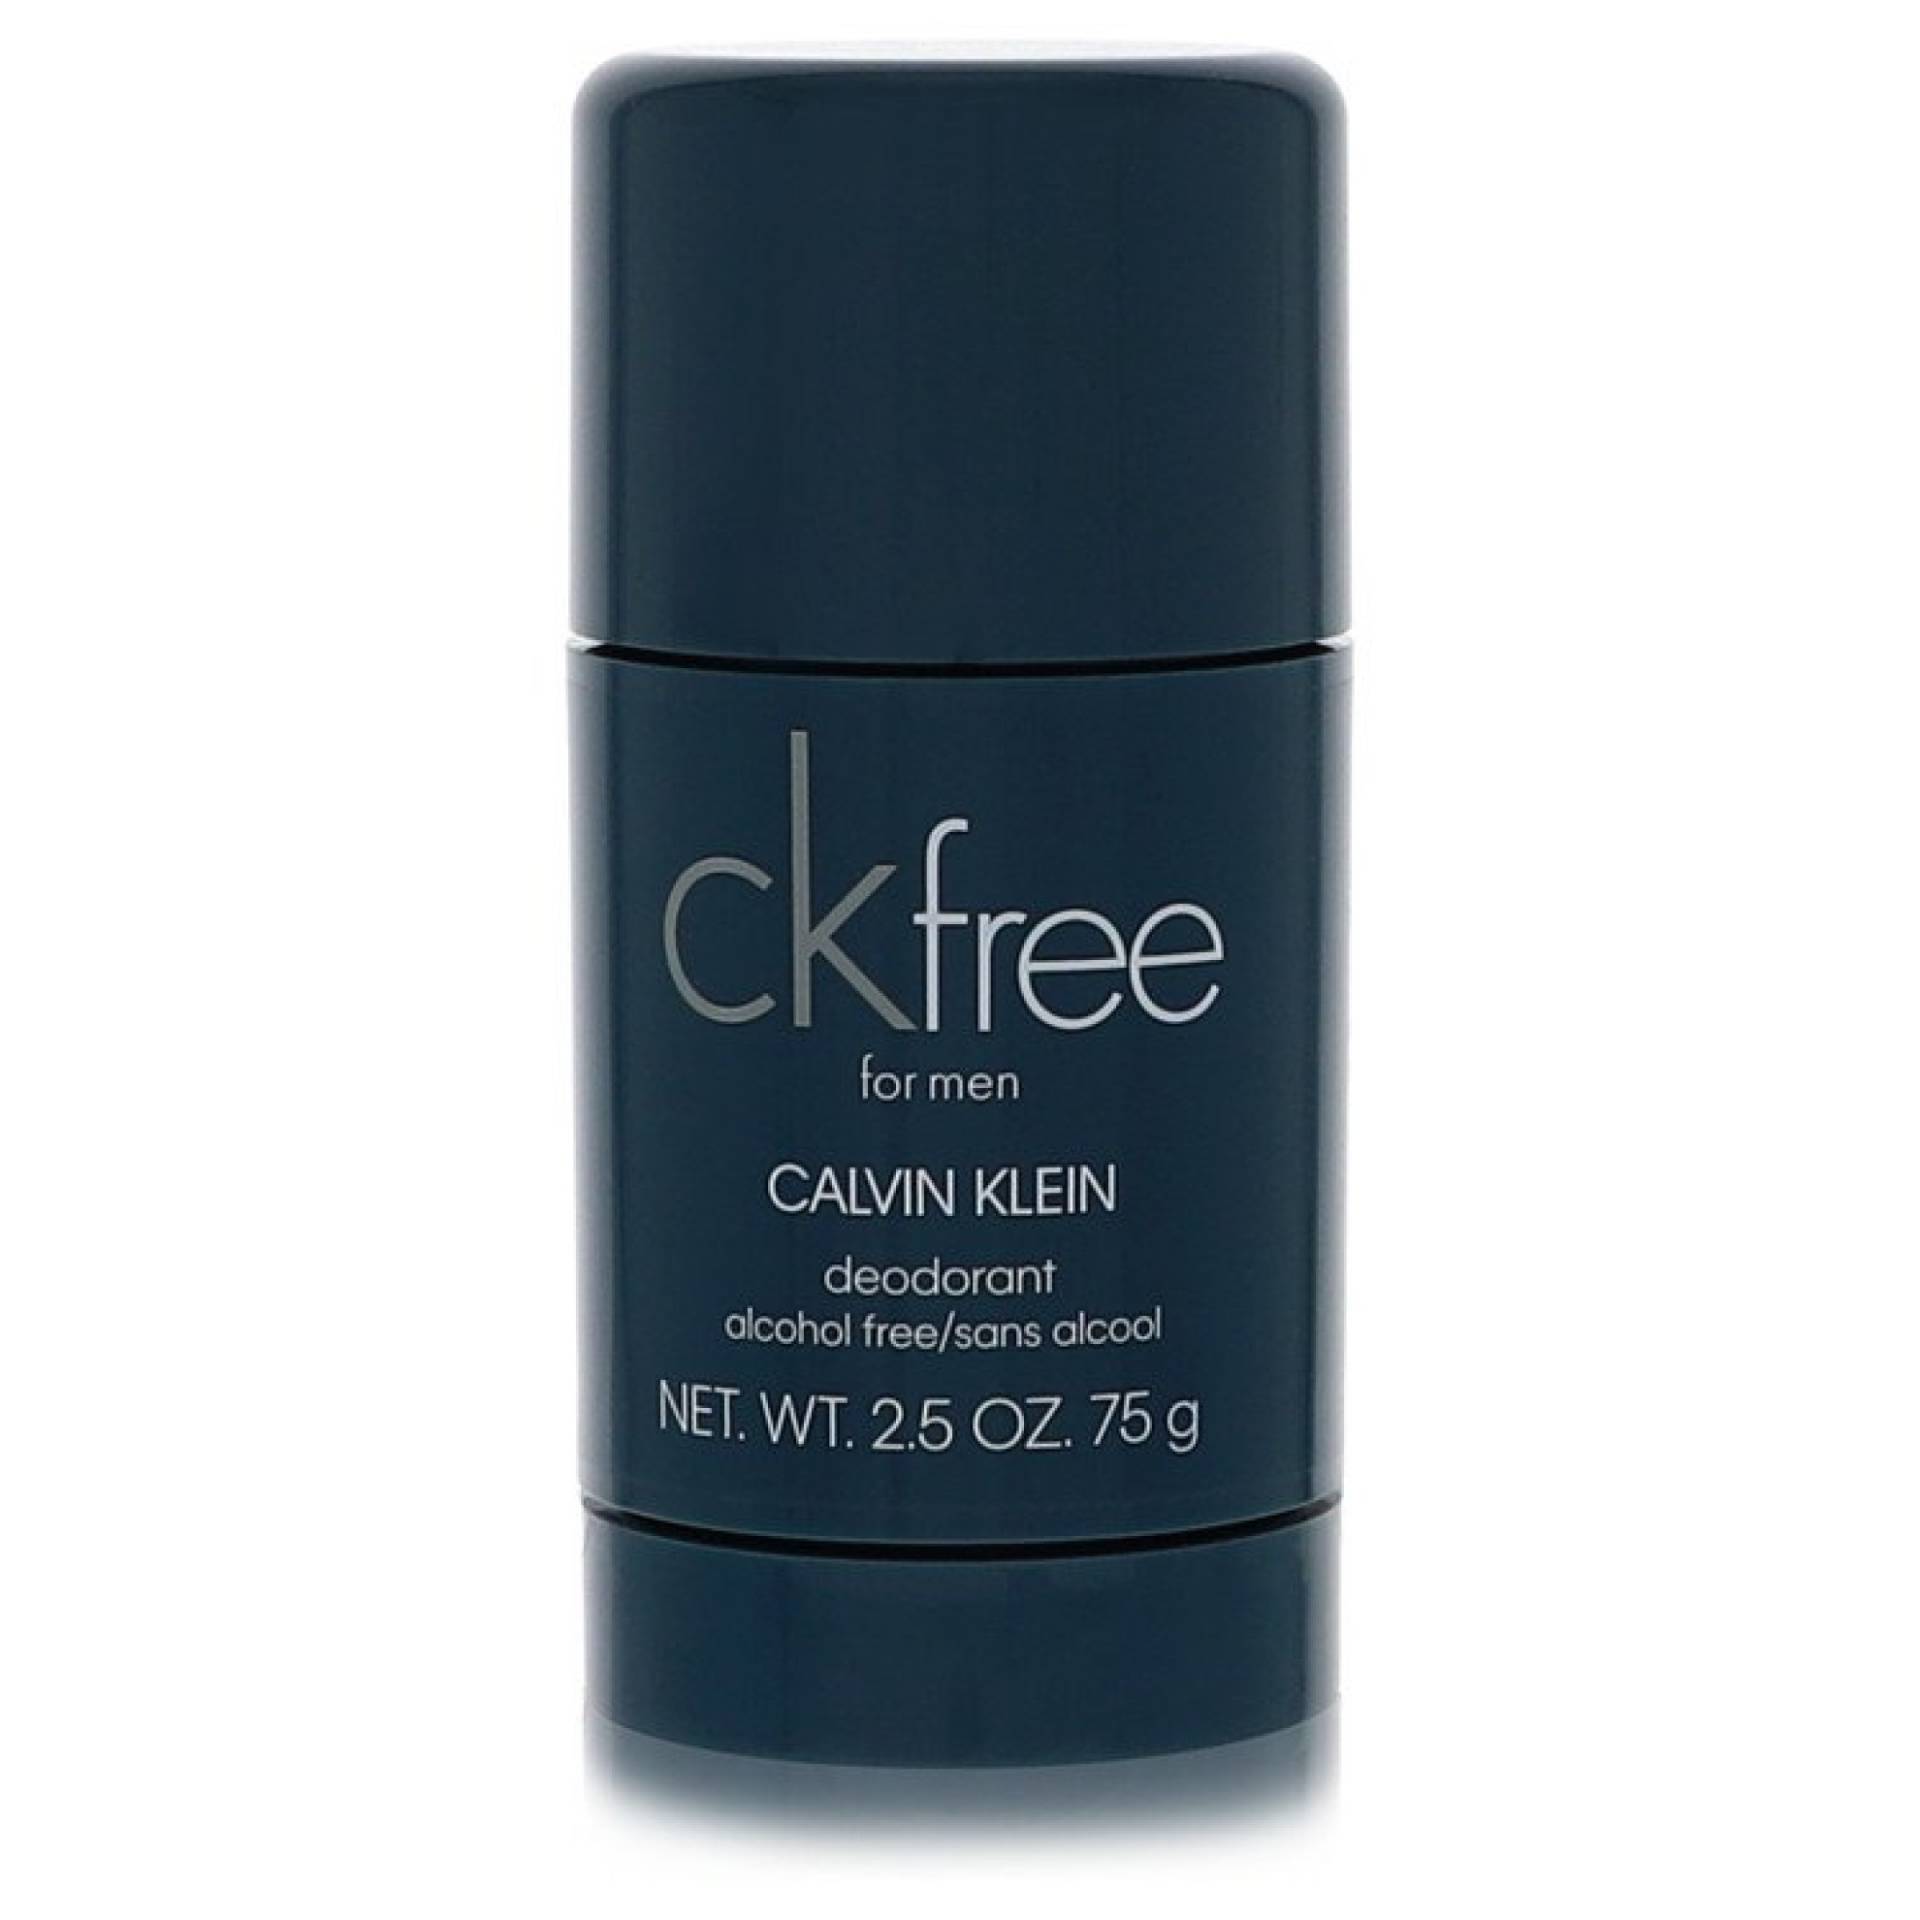 Calvin Klein CK Free Deodorant Stick 77 ml von Calvin Klein